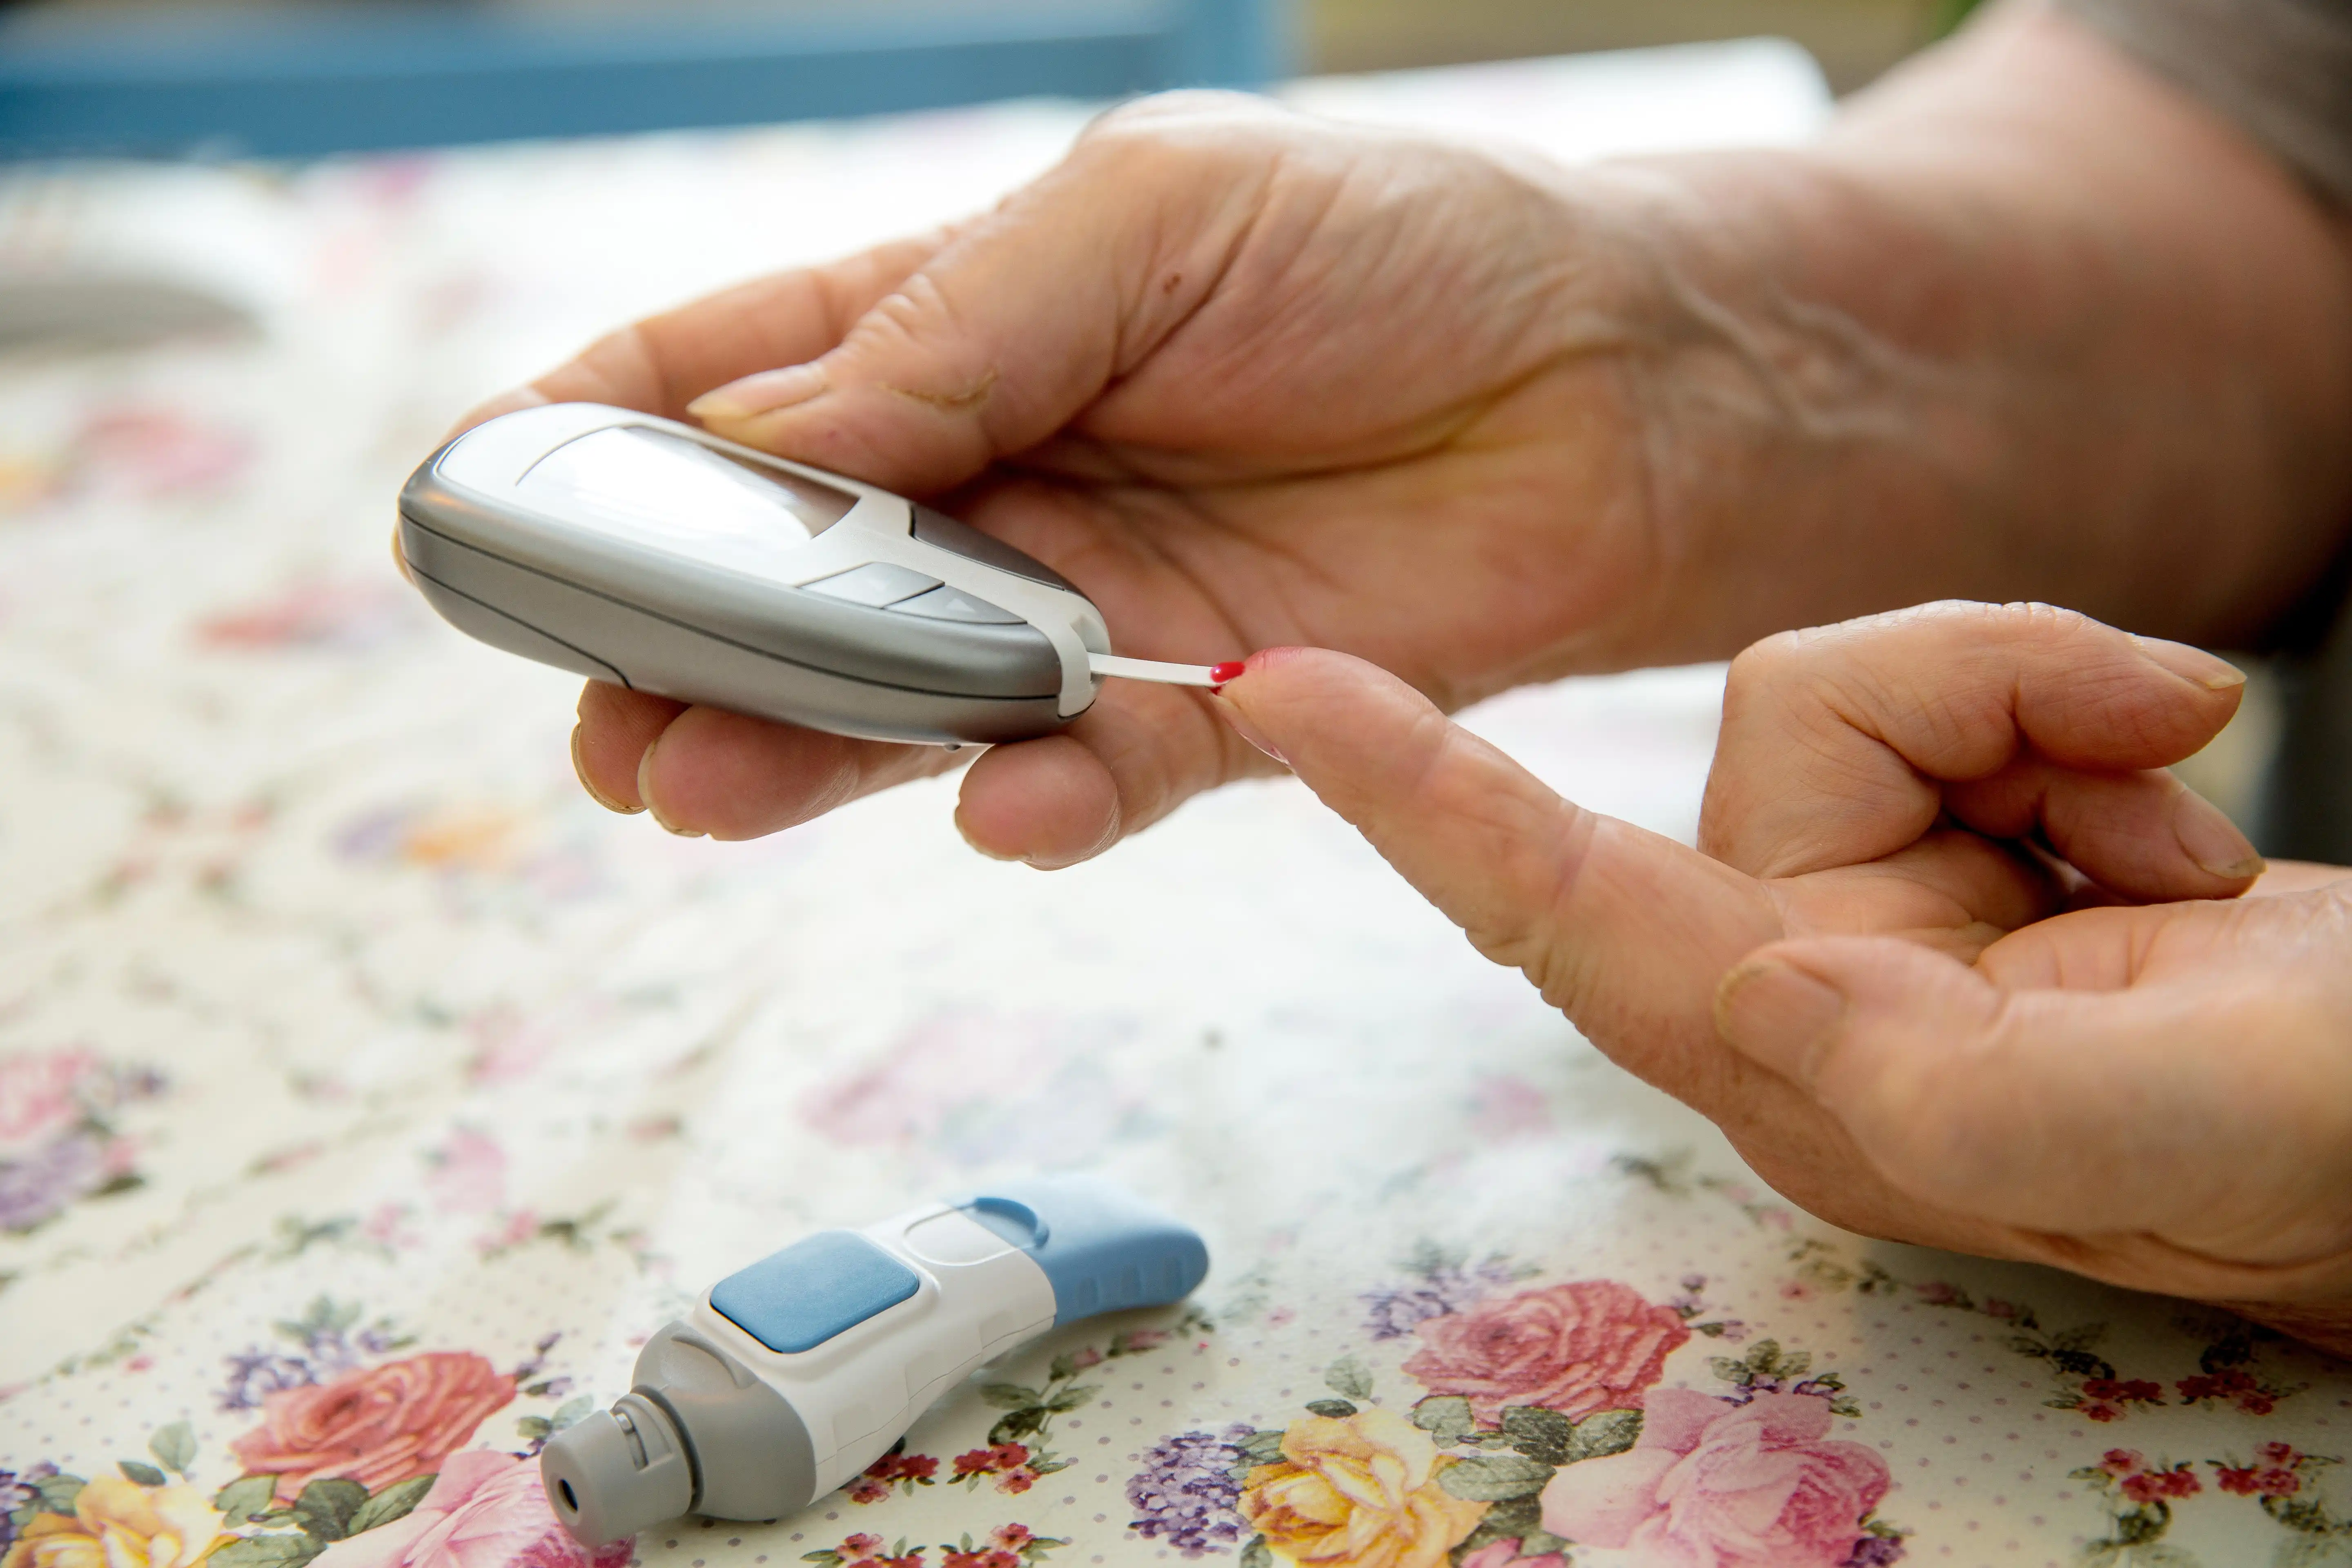 دیابت نوع 2: چیست، علل، علائم و درمان